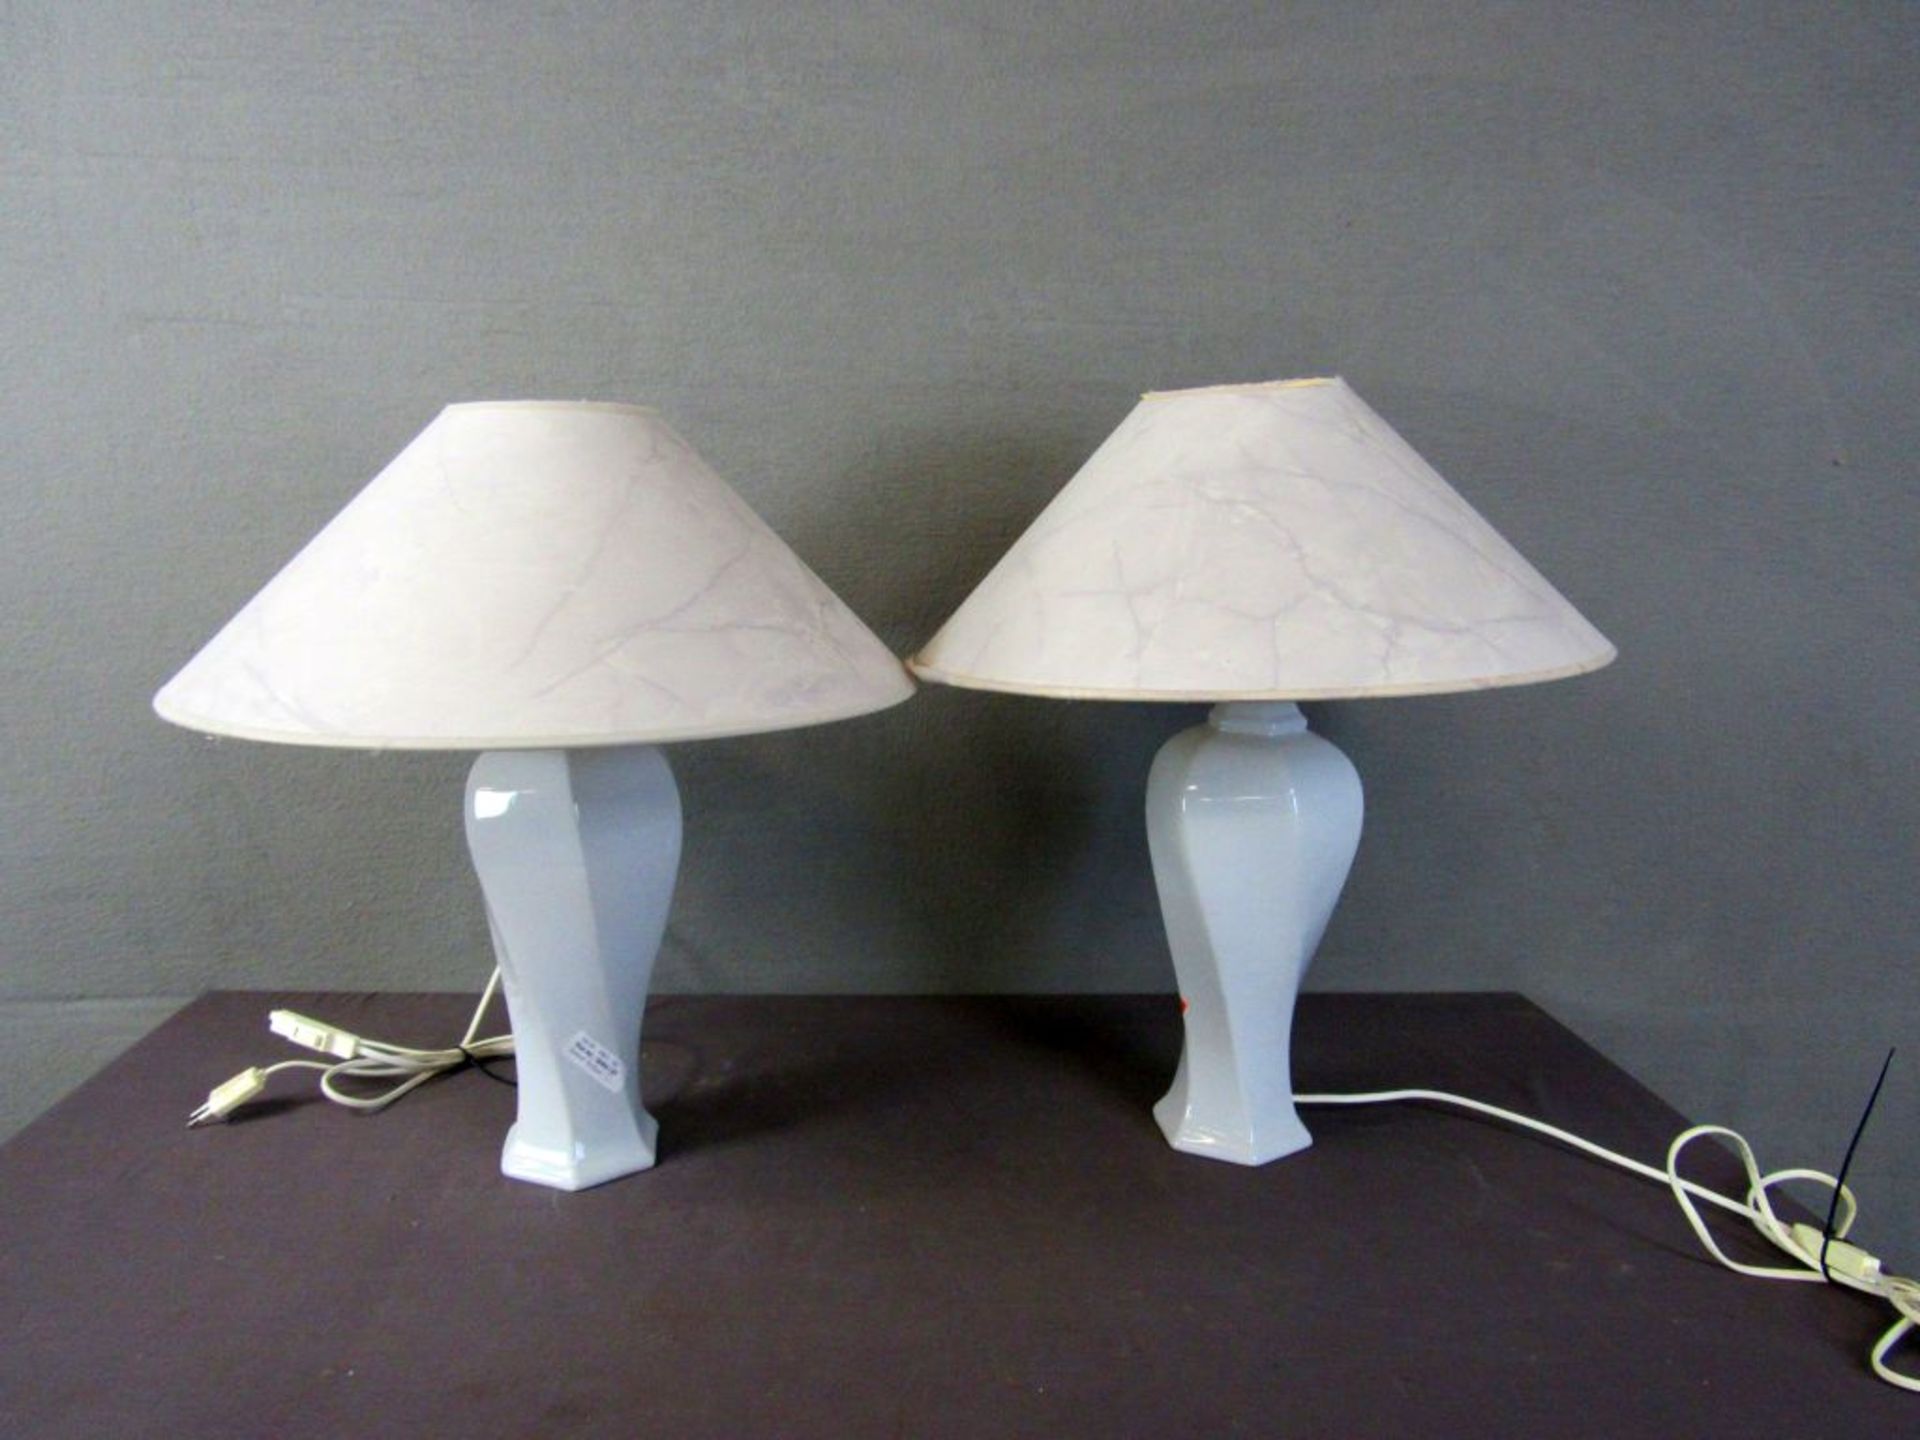 Zwei Tischlampen 50cm hoch